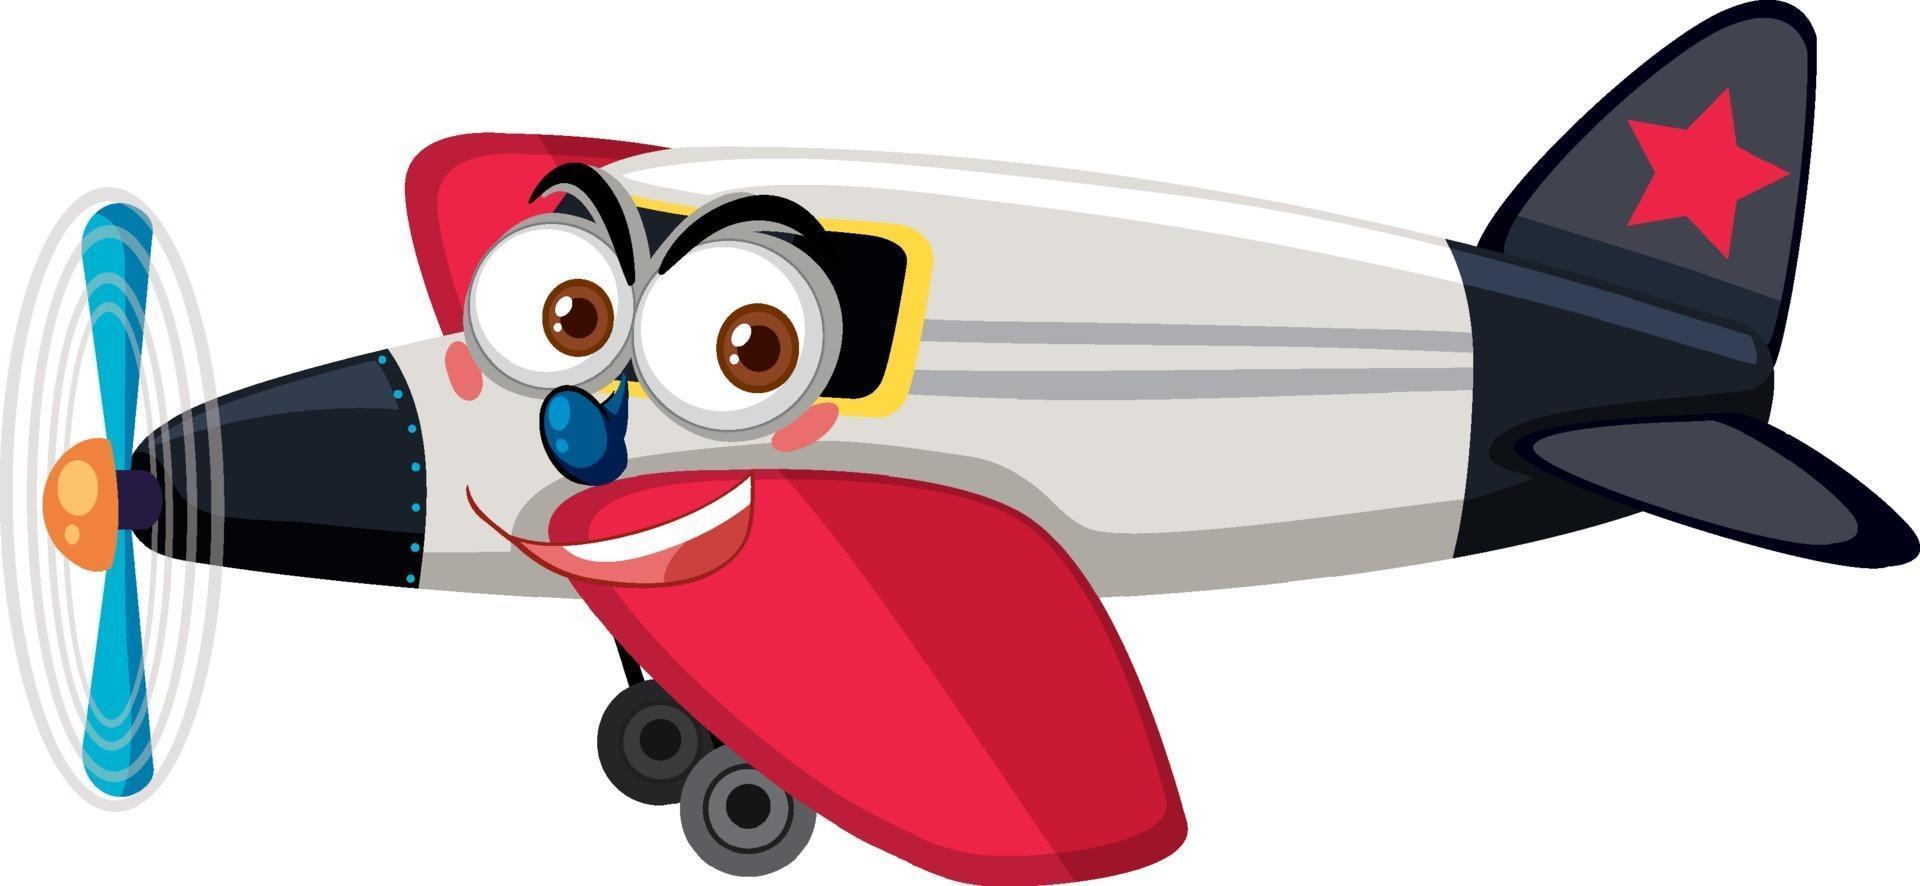 Flugzeug mit Gesichtsausdruck-Zeichentrickfigur auf weißem Hintergrund vektor